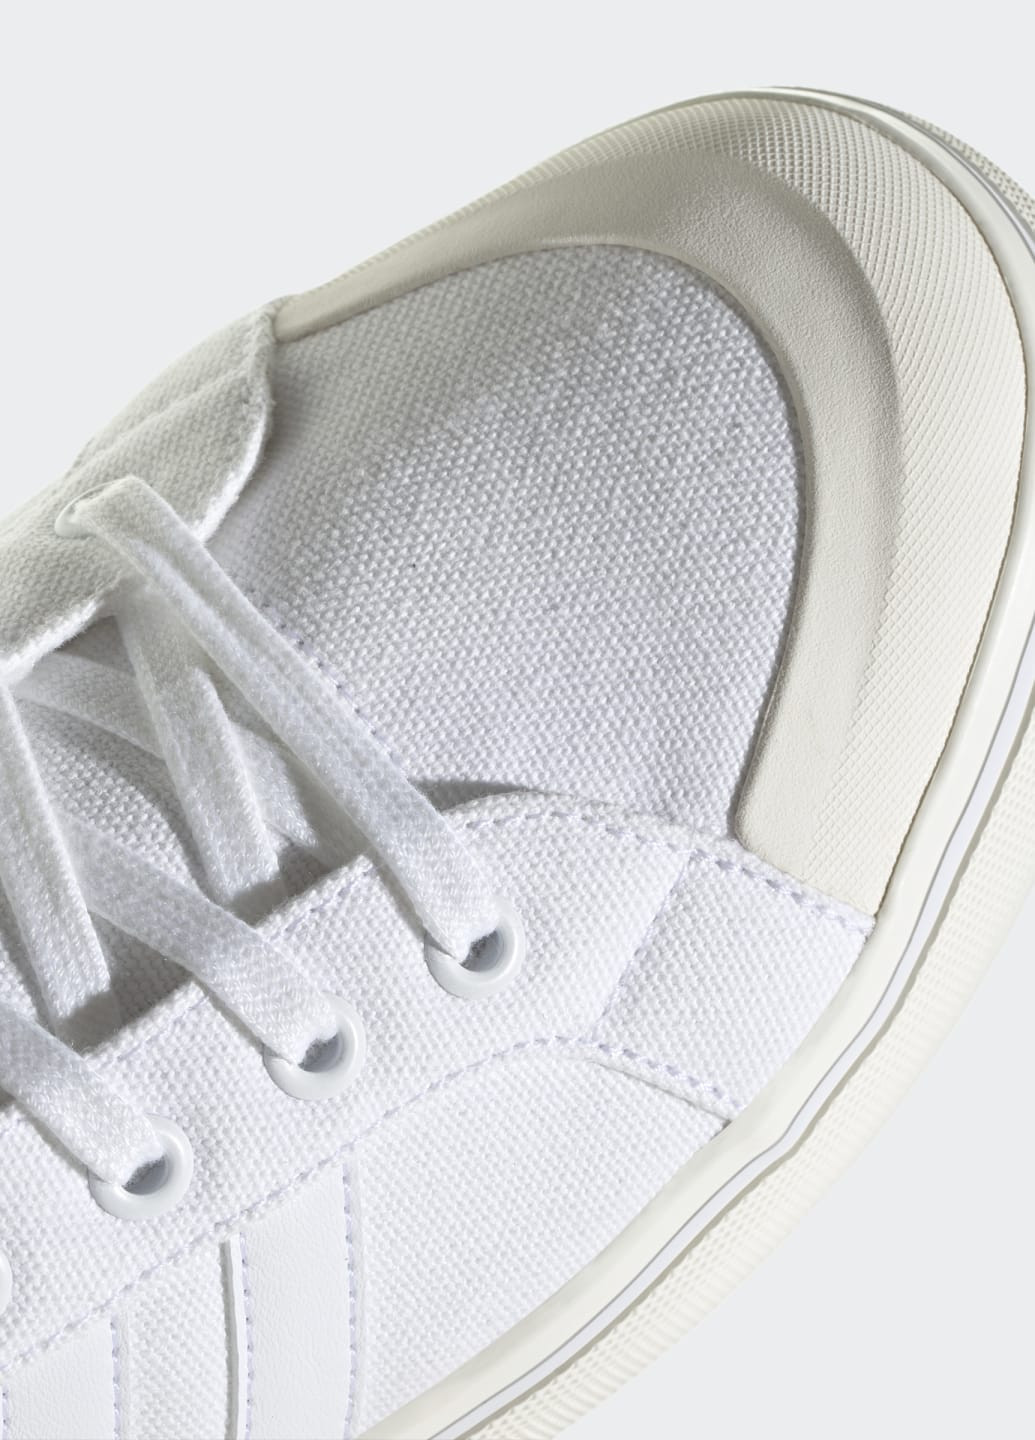 Белые всесезонные кроссовки bravada 2.0 lifestyle skateboarding canvas adidas